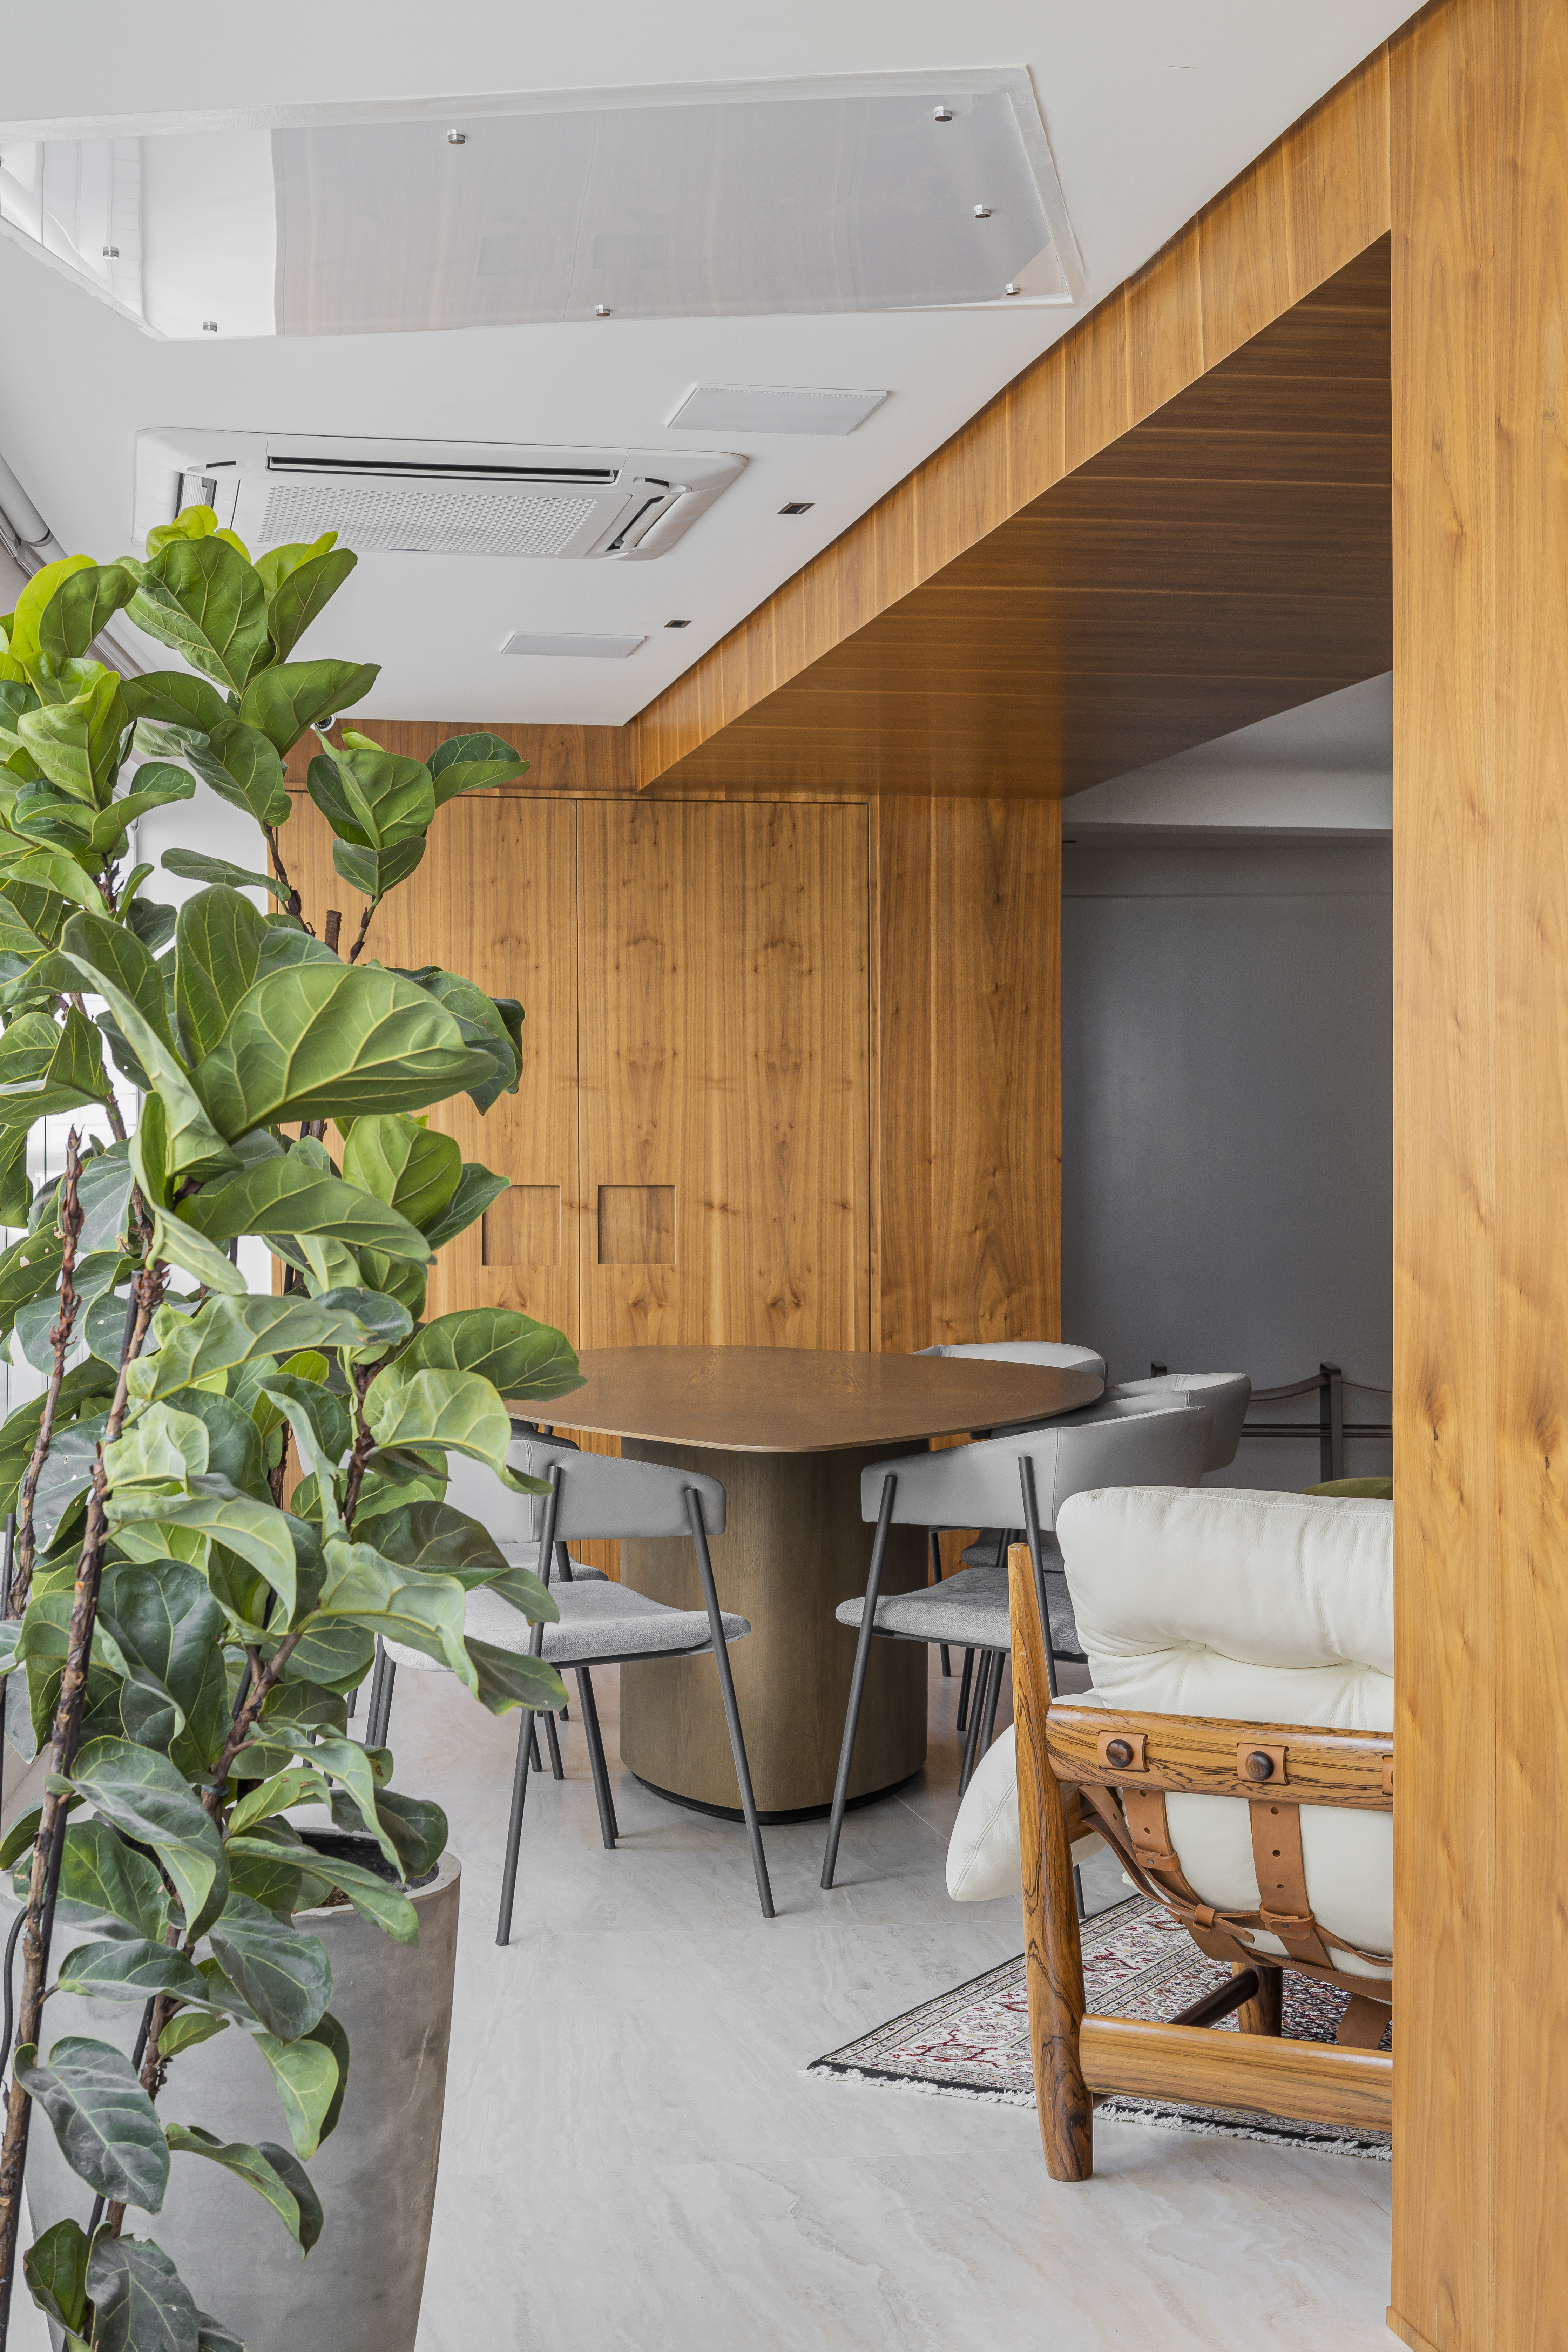 Projeto de Romário Rodrigues. Na foto, varanda integrada com mesa em formato orgânico e plantas.